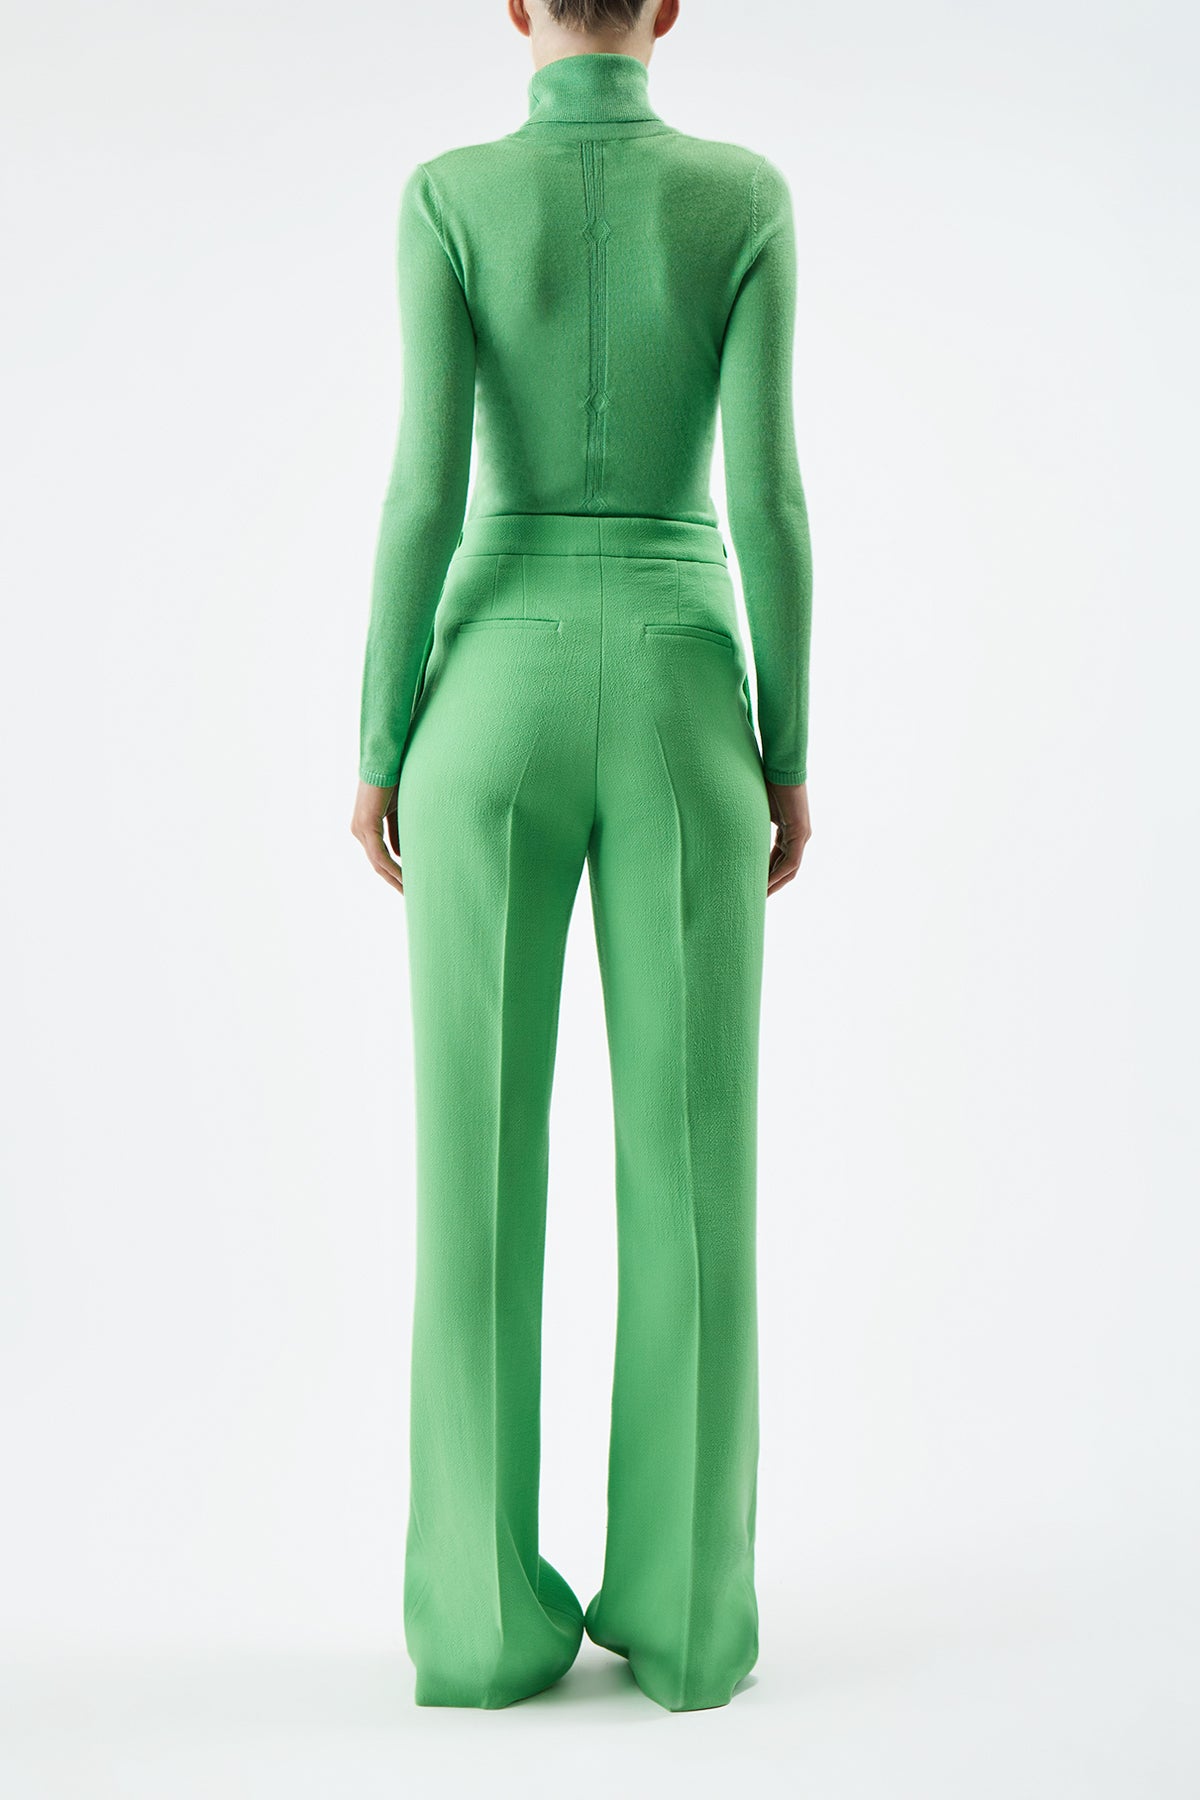 Steinem Knit Turtleneck in Fluorescent Green Cashmere Silk